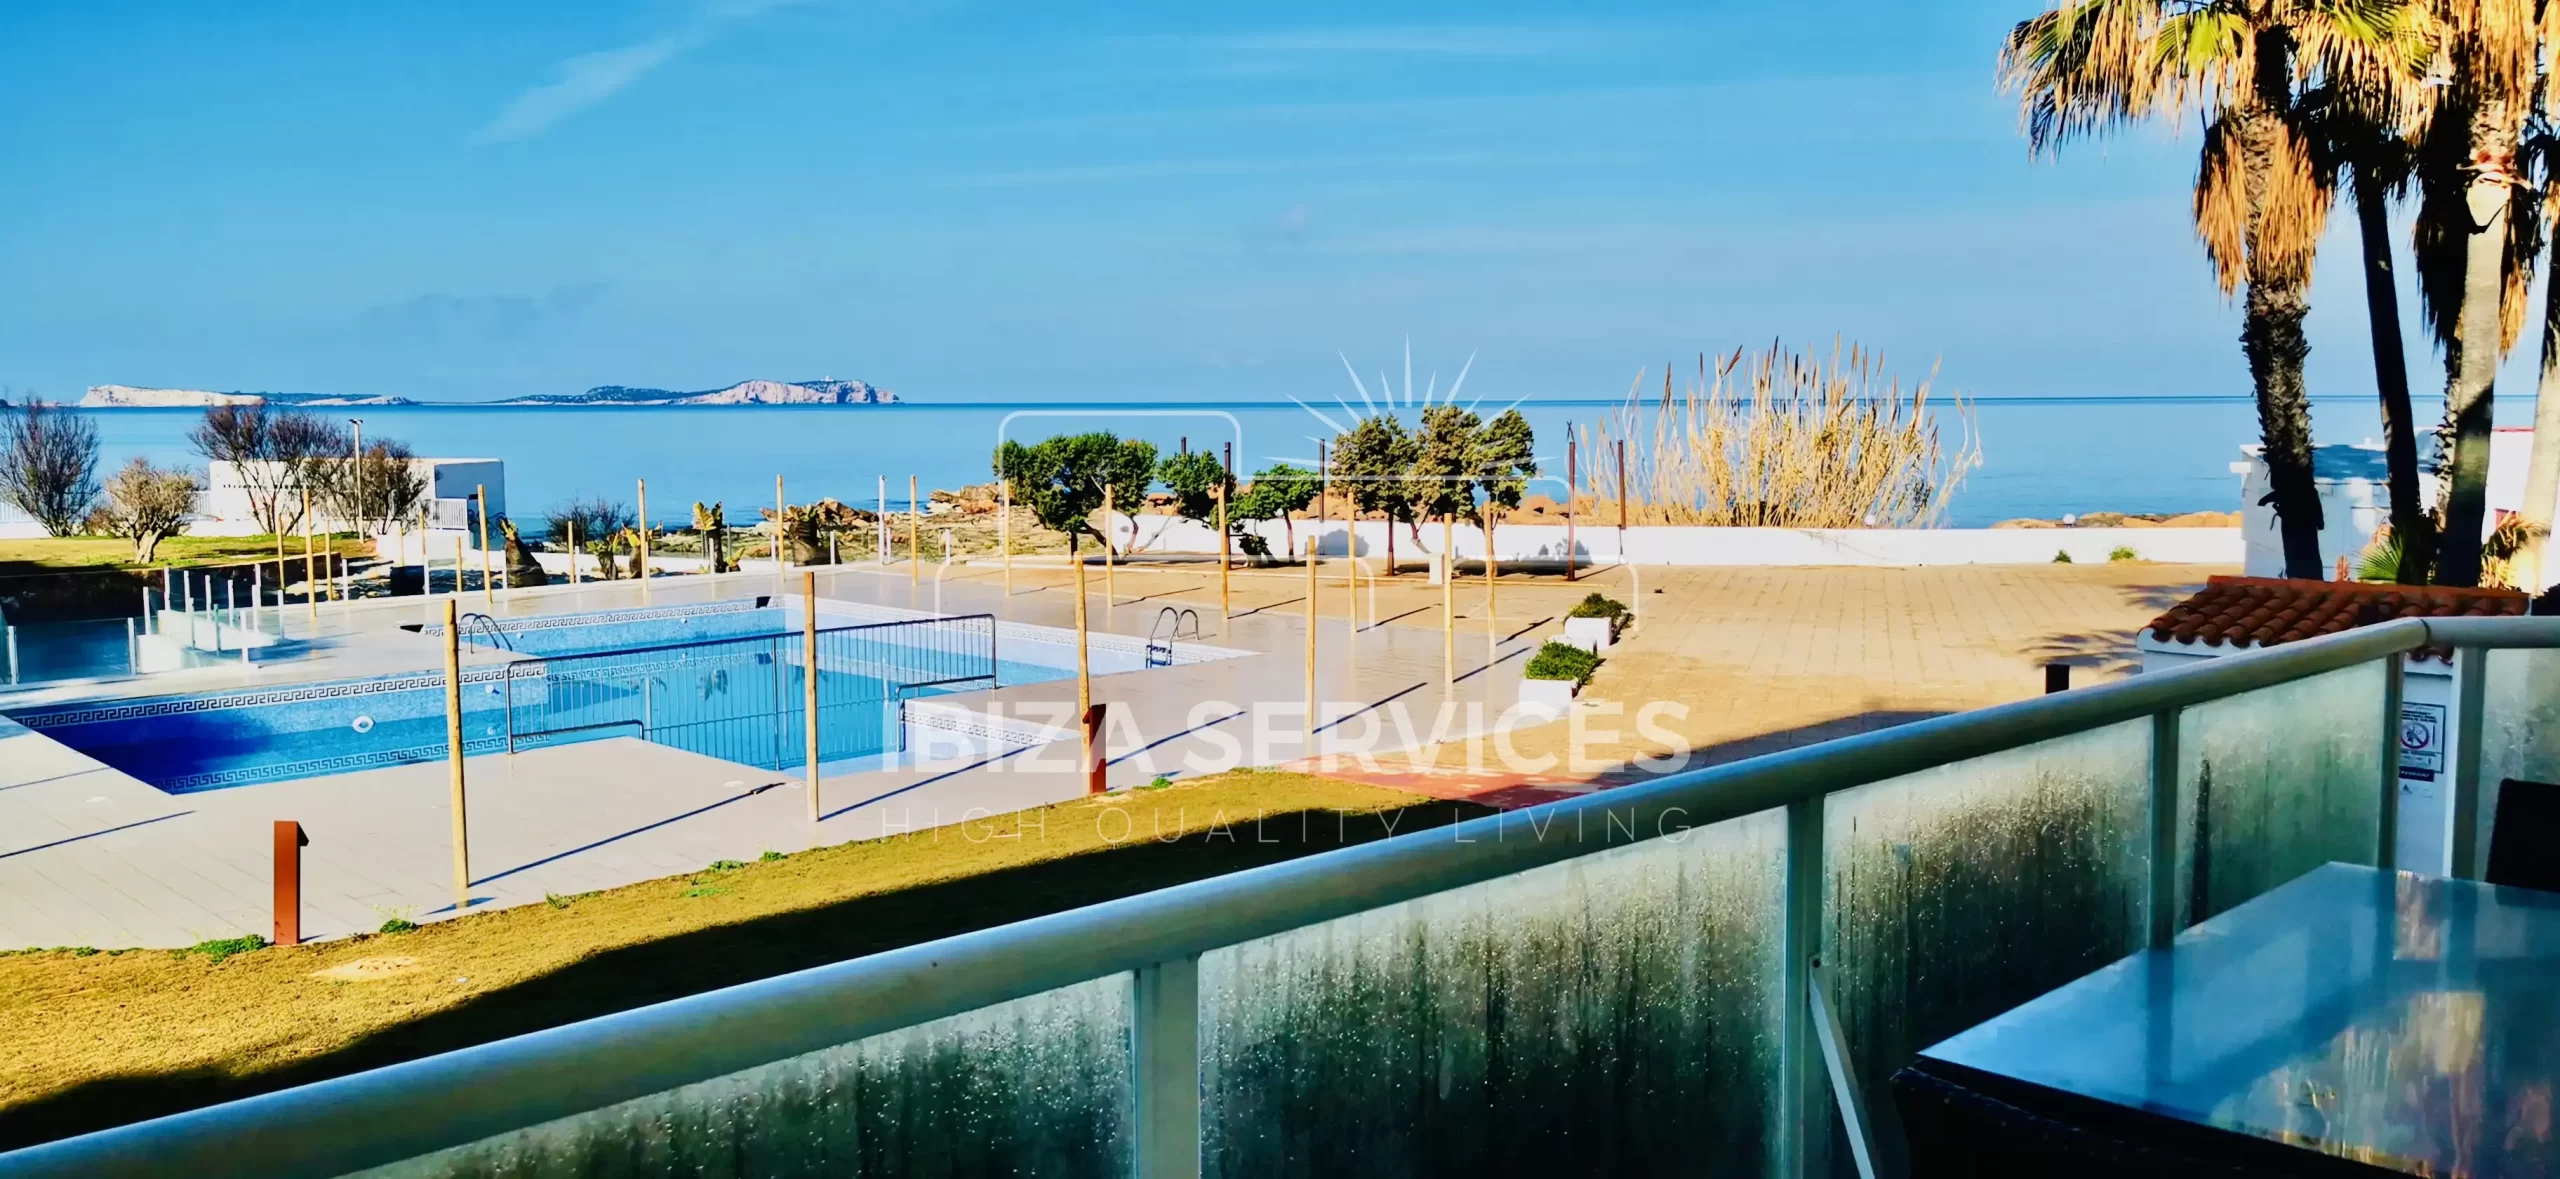 Geräumige Wohnung mit Meerblick zum Verkauf an der Westküste Ibizas.